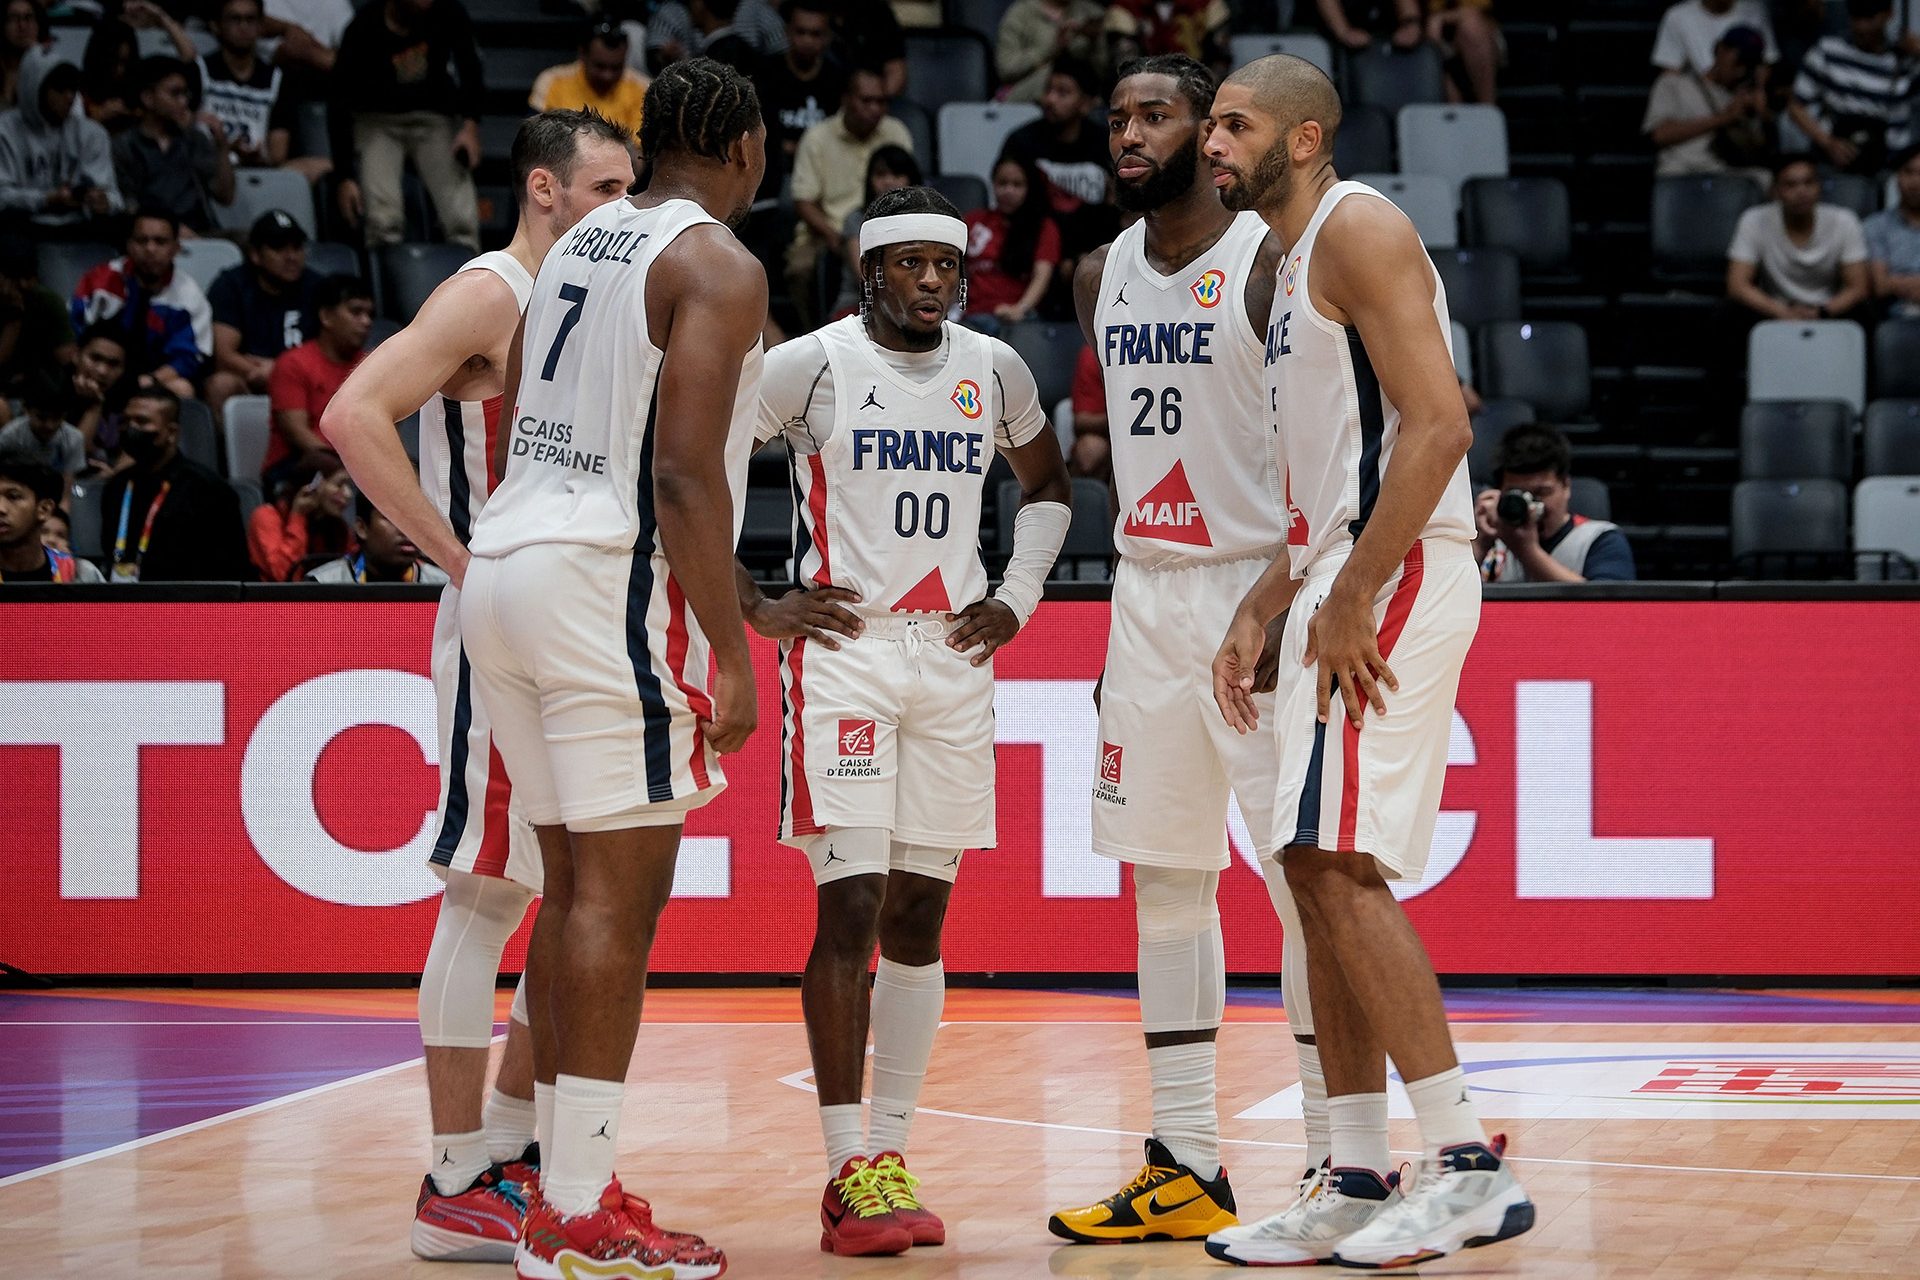 Baloncesto: hecatombe de Francia en el Mundial